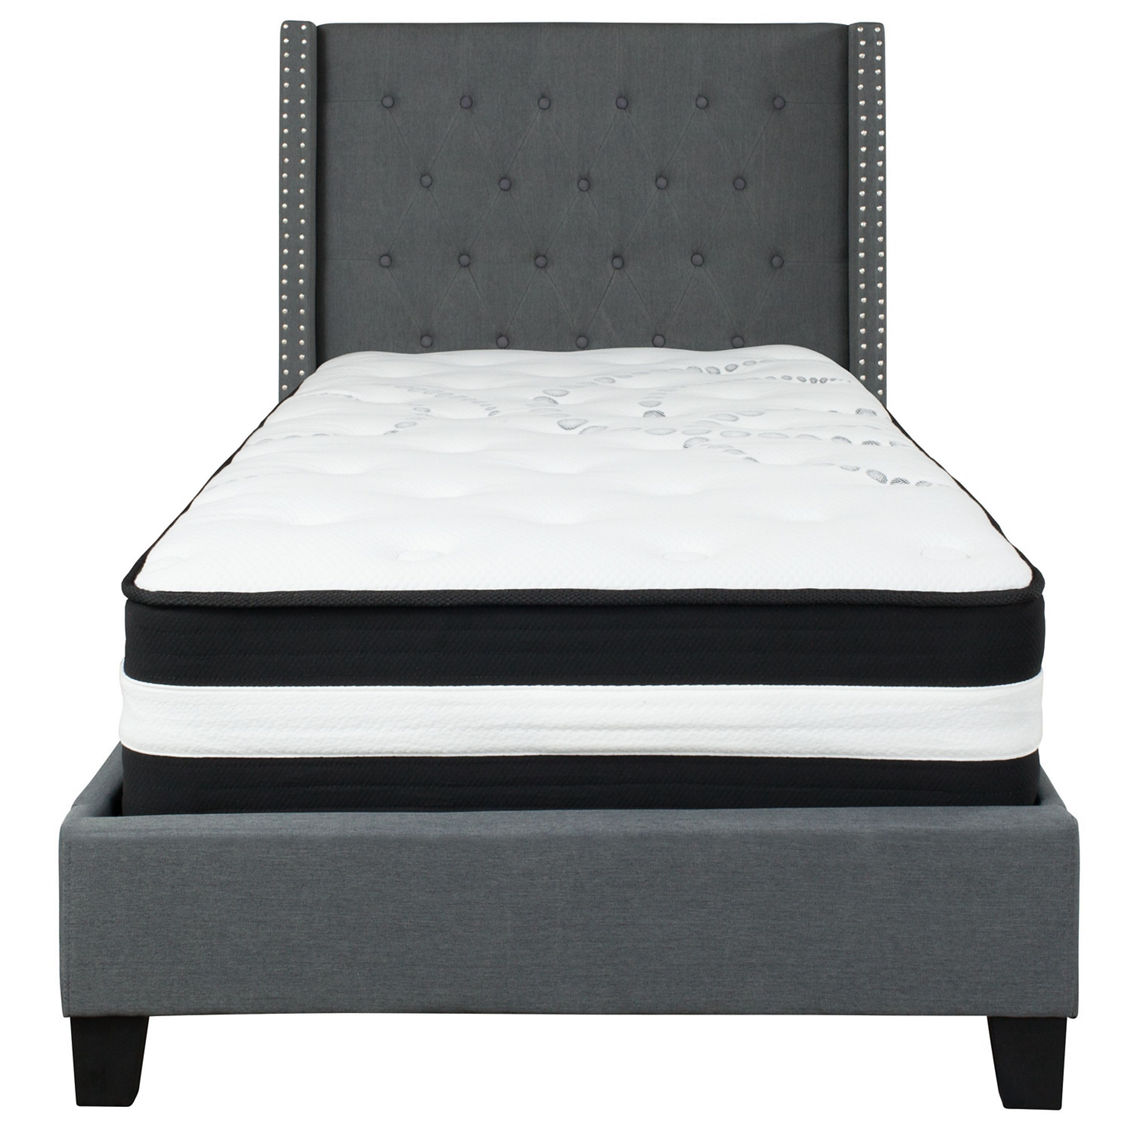 Flash Furniture Platform Bed with Pocket Spring Mattress - Image 5 of 5